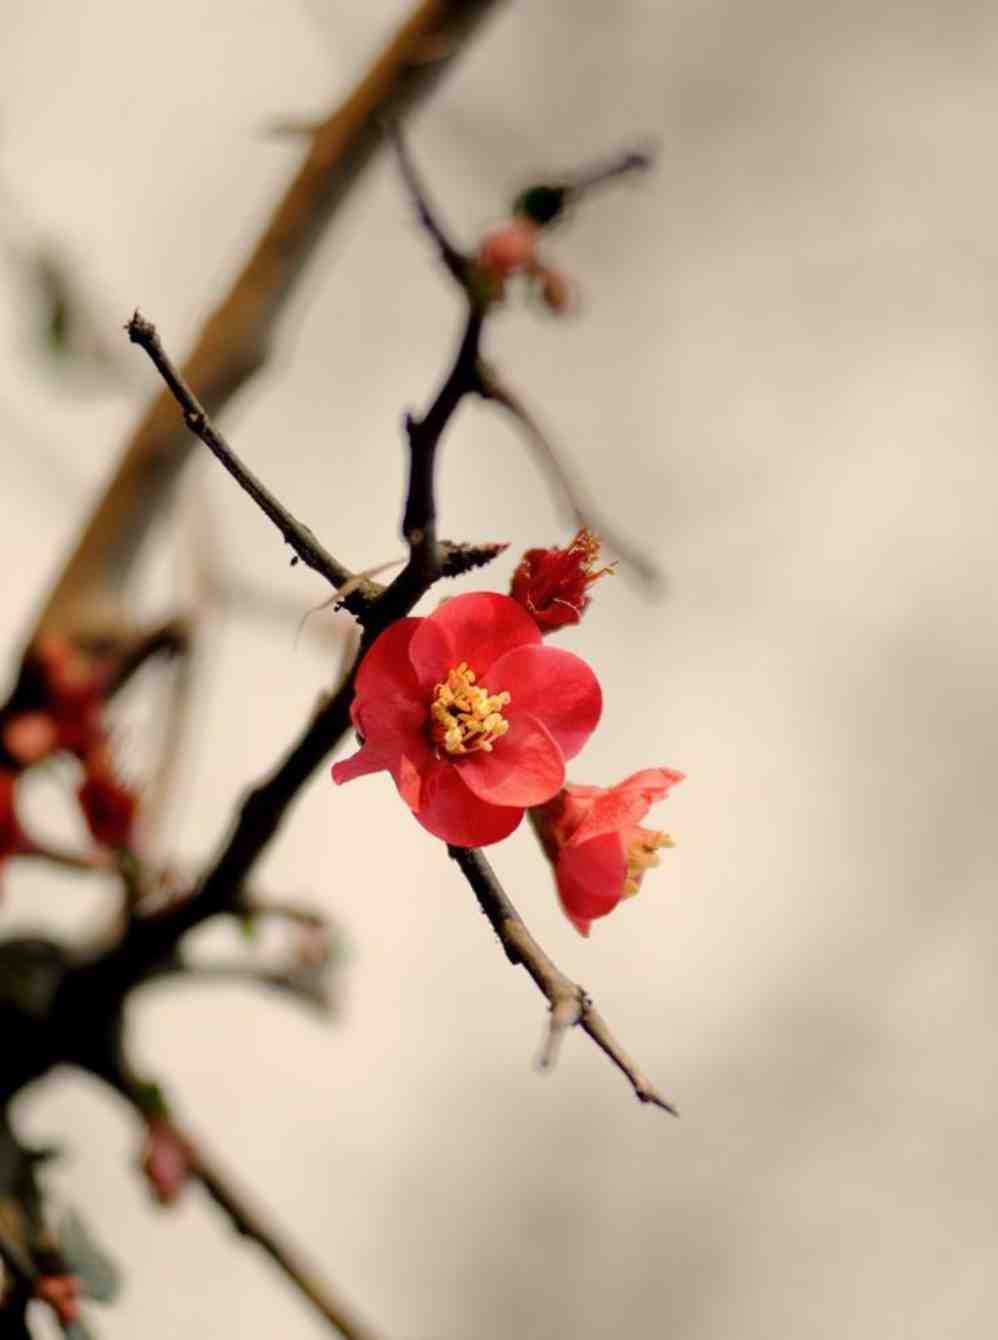 梅花香自苦寒来，十首观梅的诗词，一起欣赏美丽的梅花吧